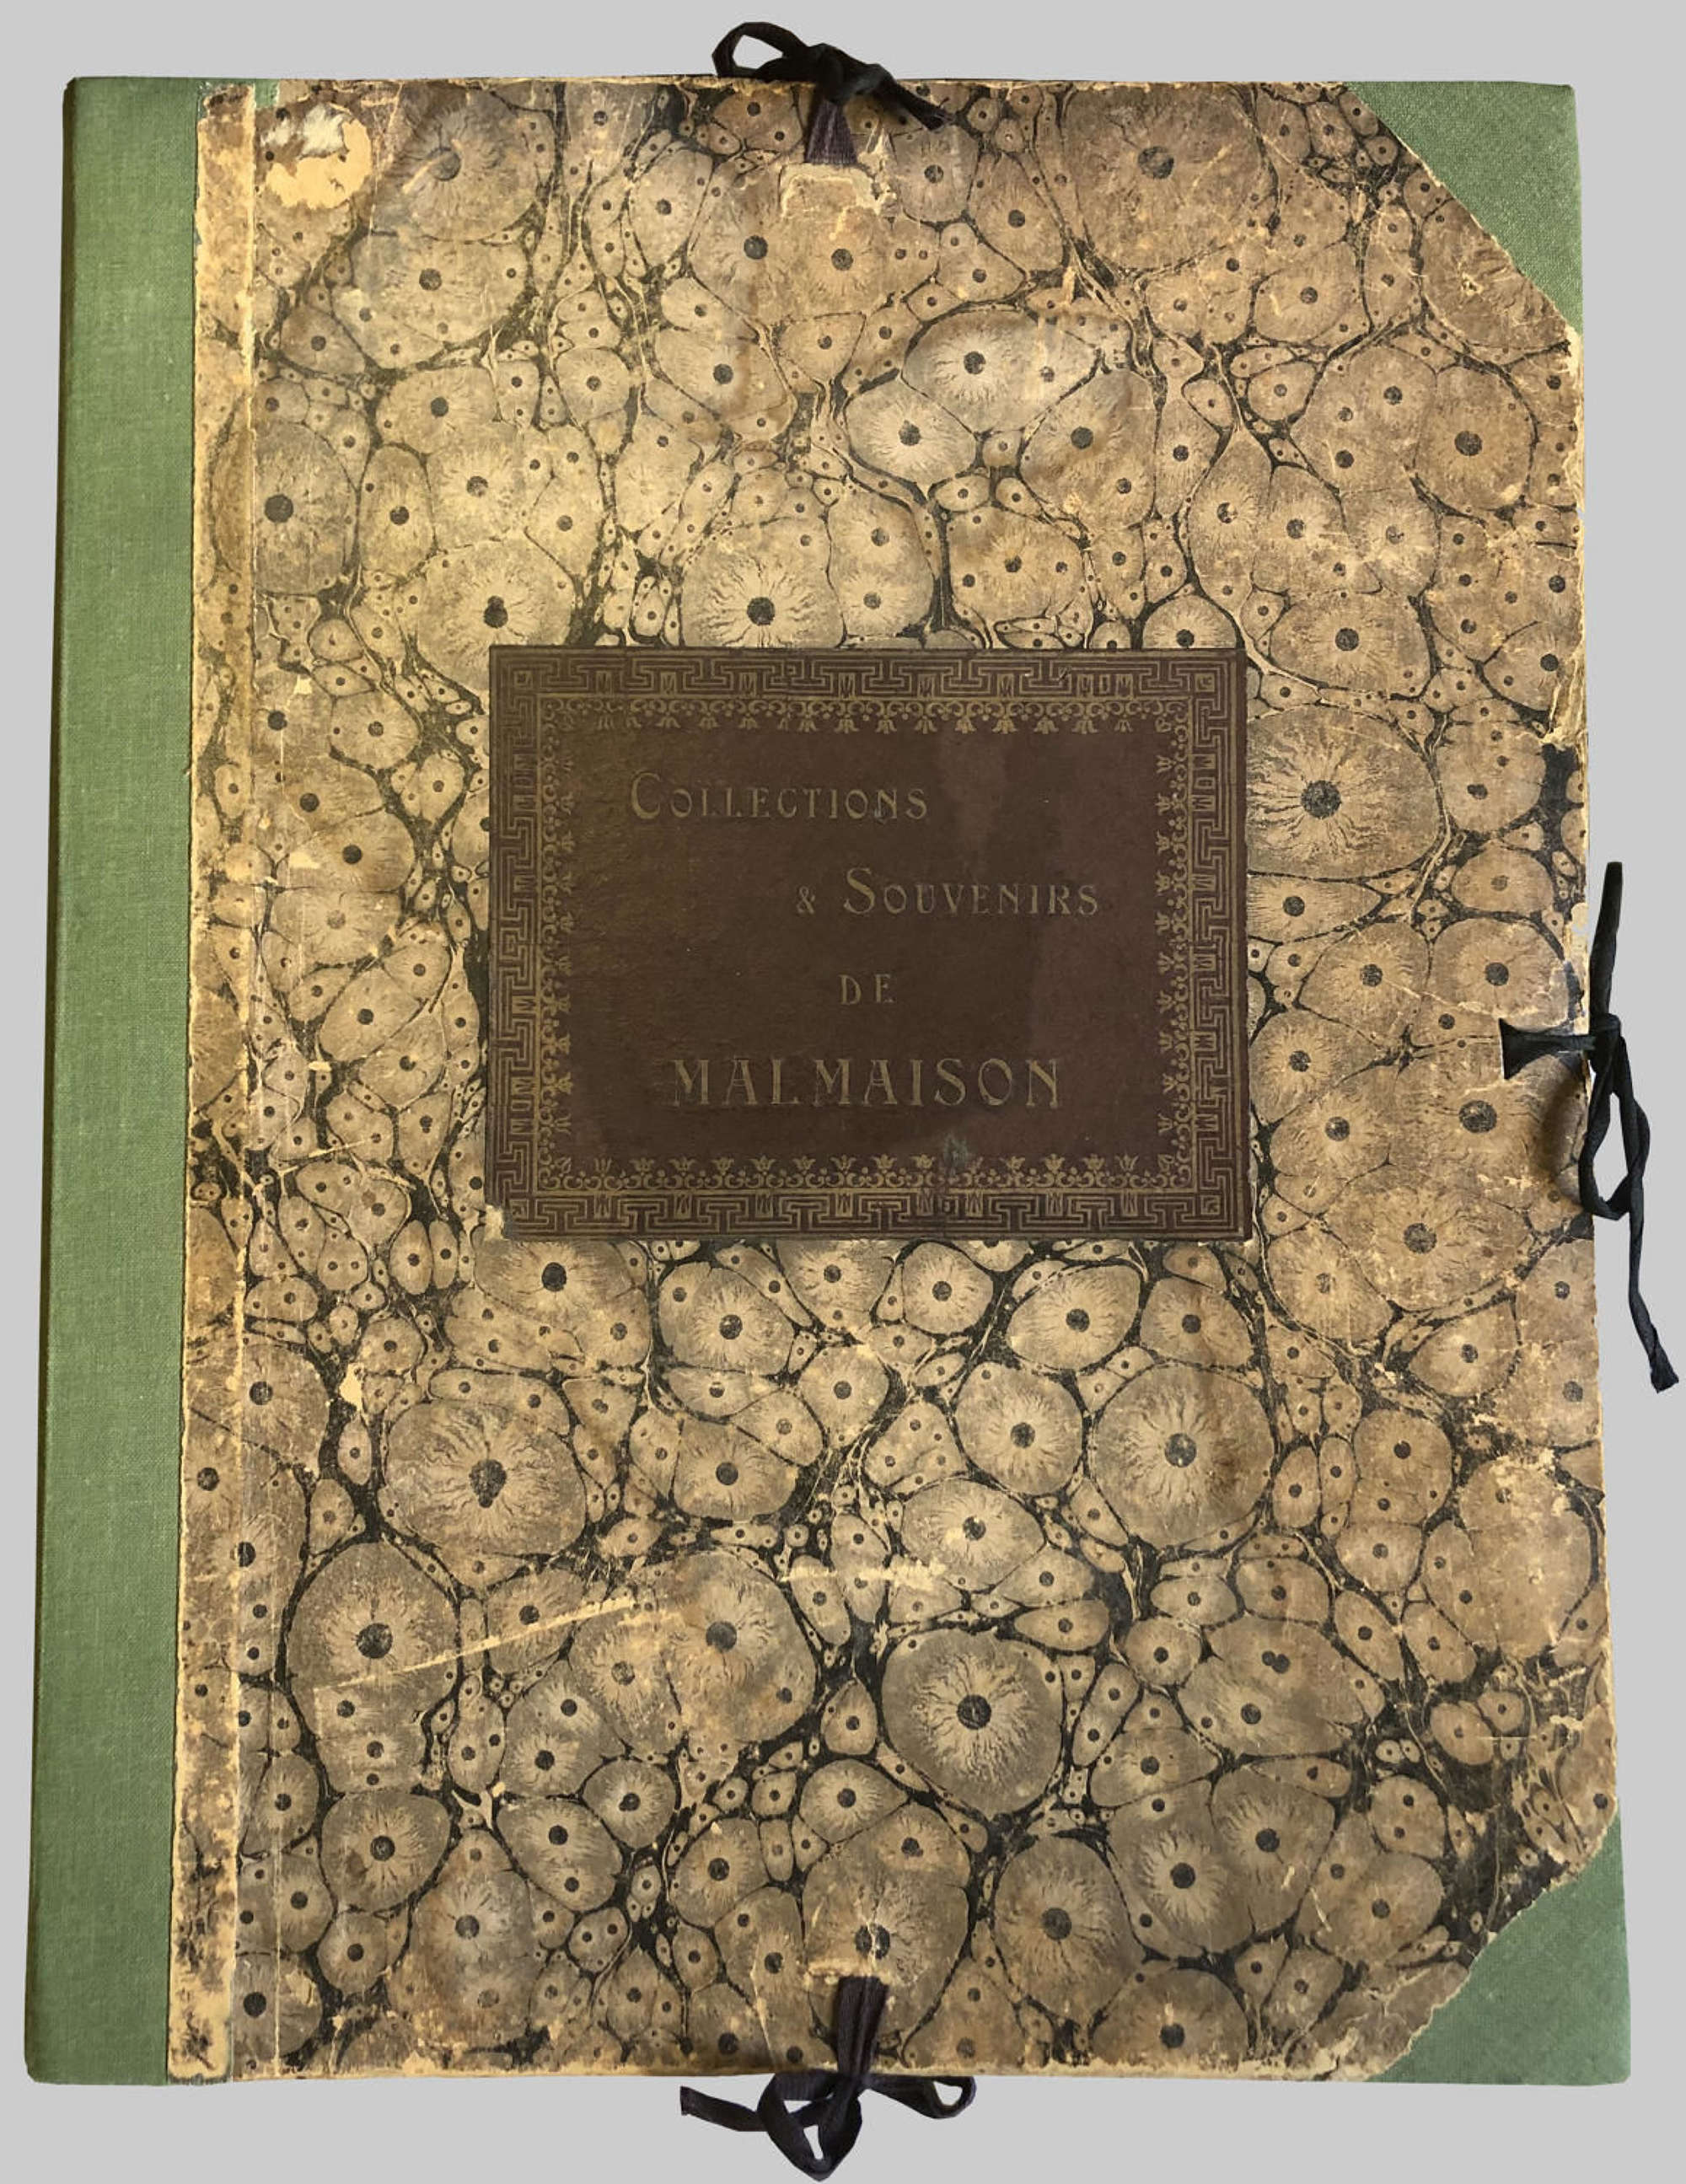 Collections & Souvenirs de Malmaison, France, August 1921